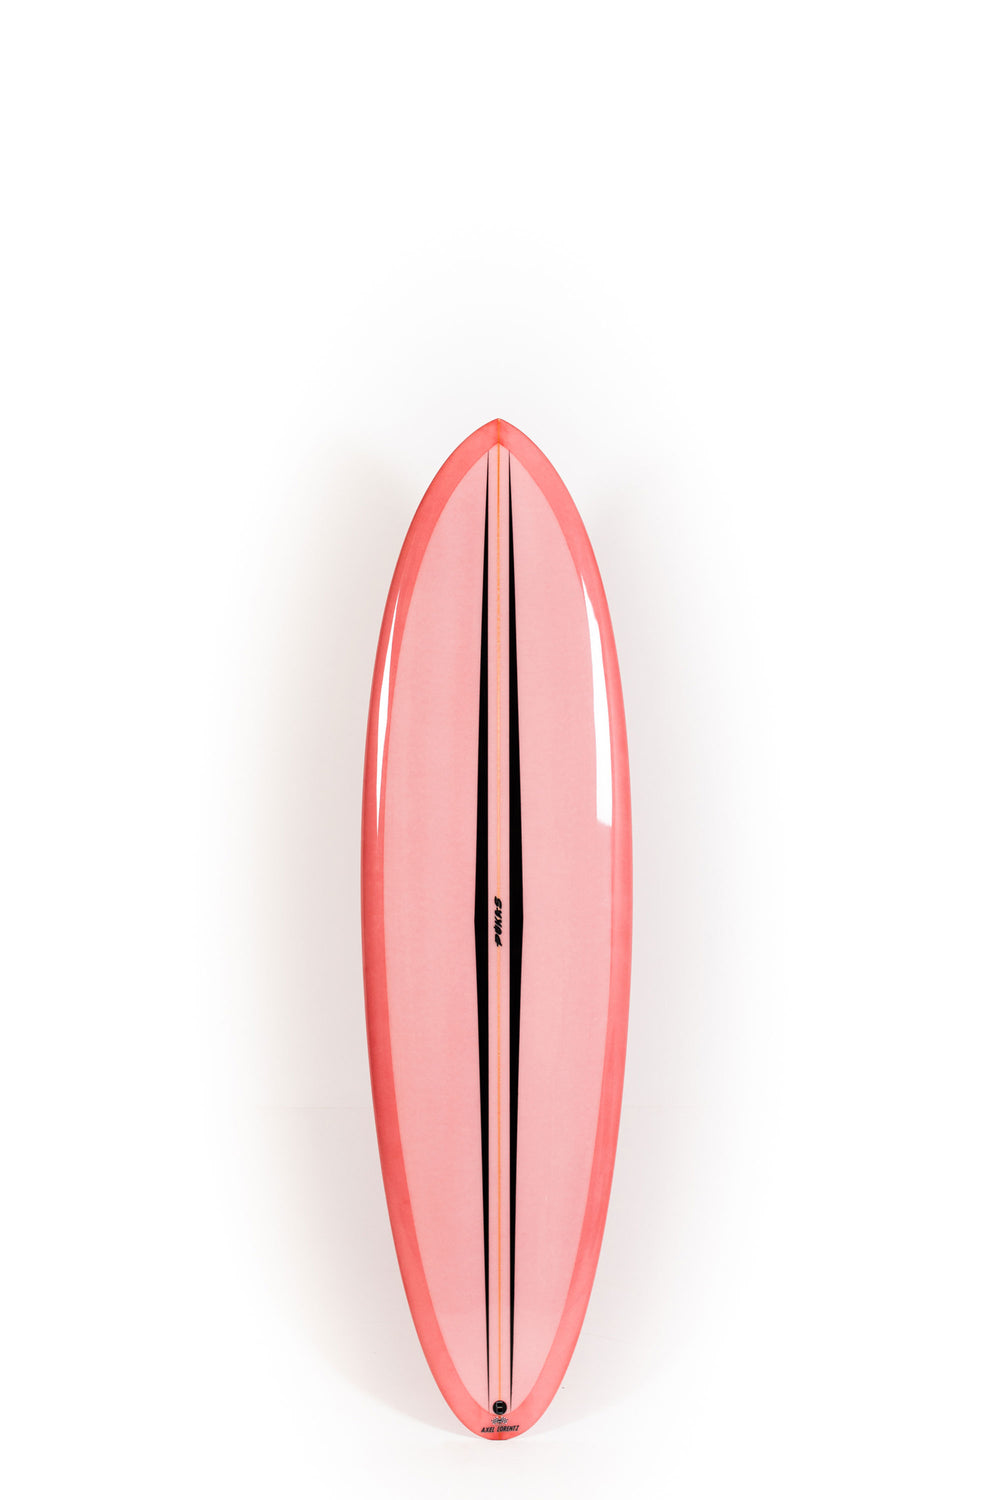 Pukas Surf Shop - Pukas Surfboard - LA CÔTE by Axel Lorentz - 6'6